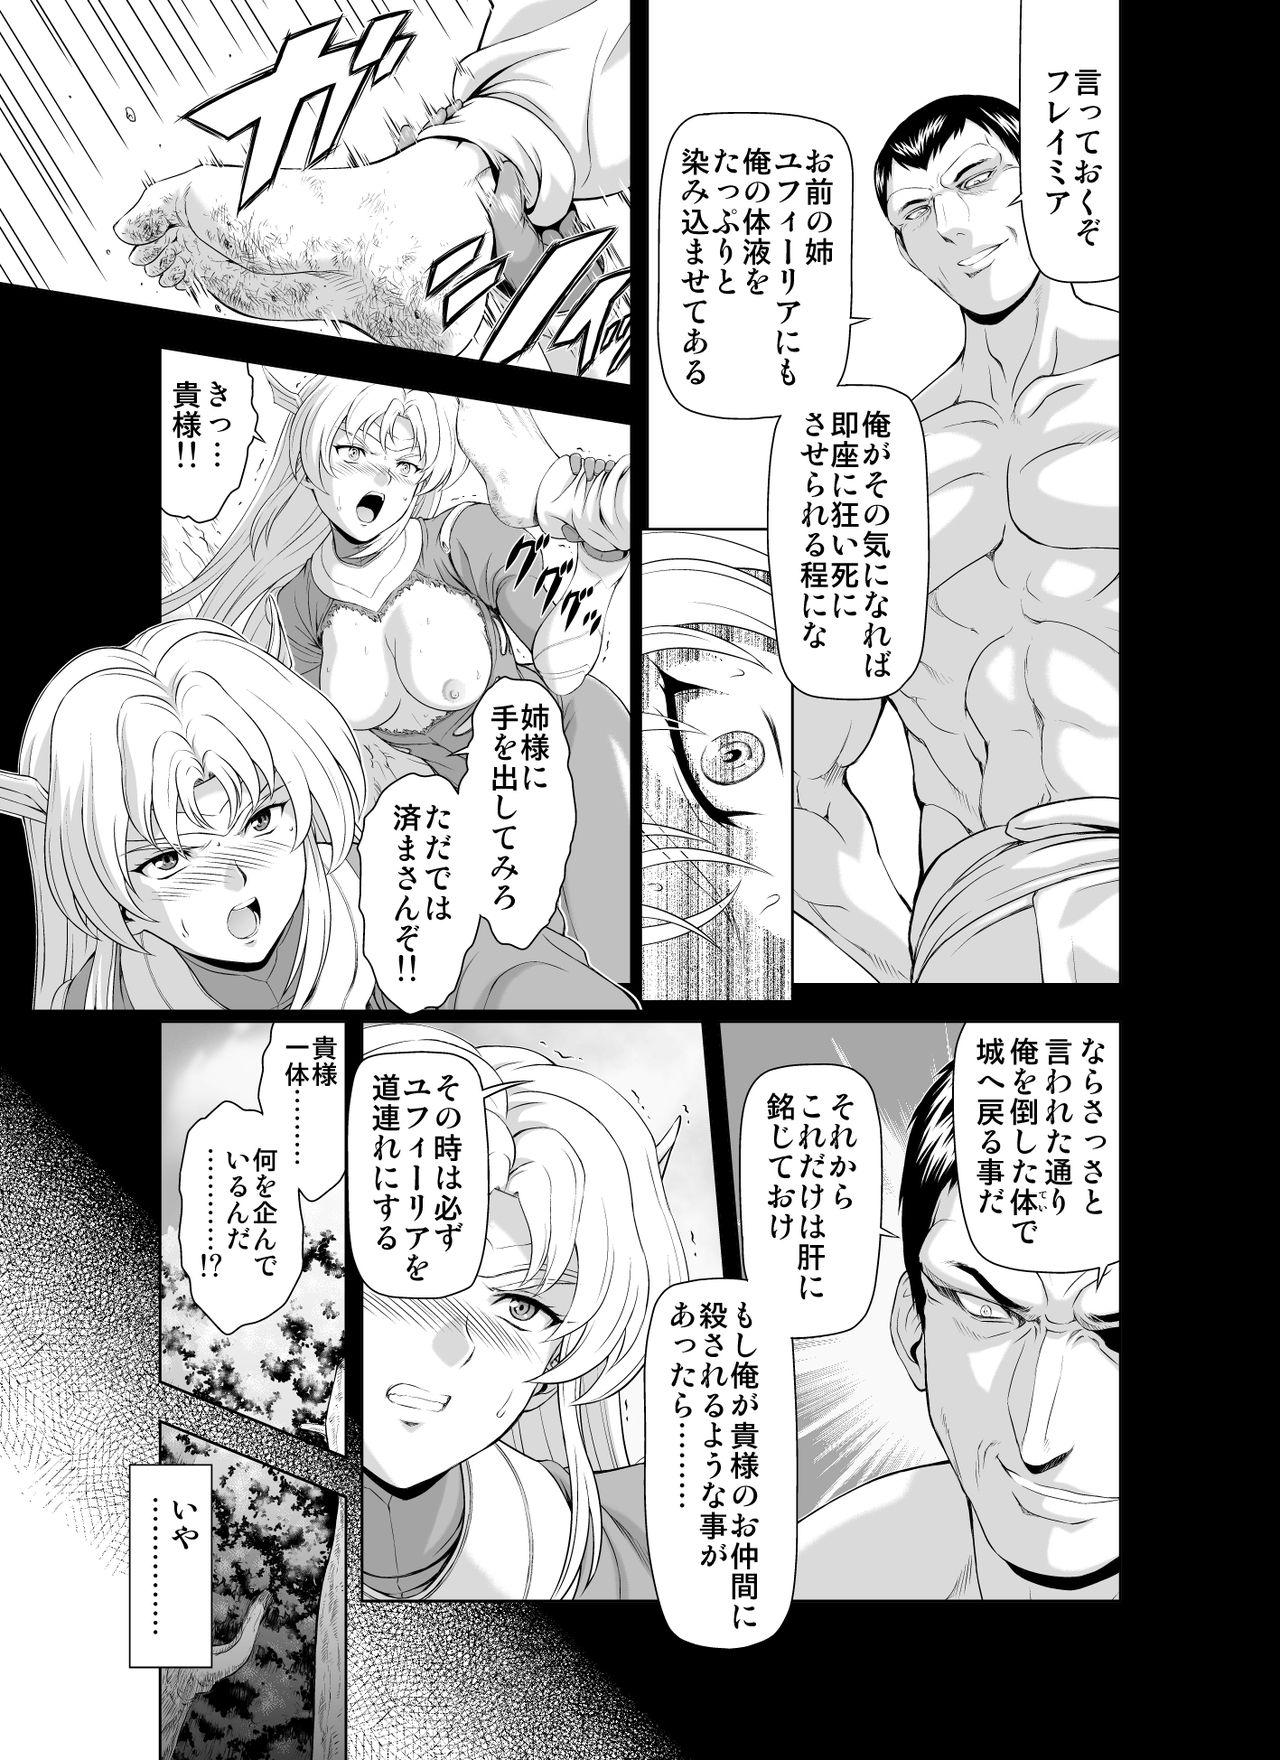 Reties no Michibiki Vol. 2 6